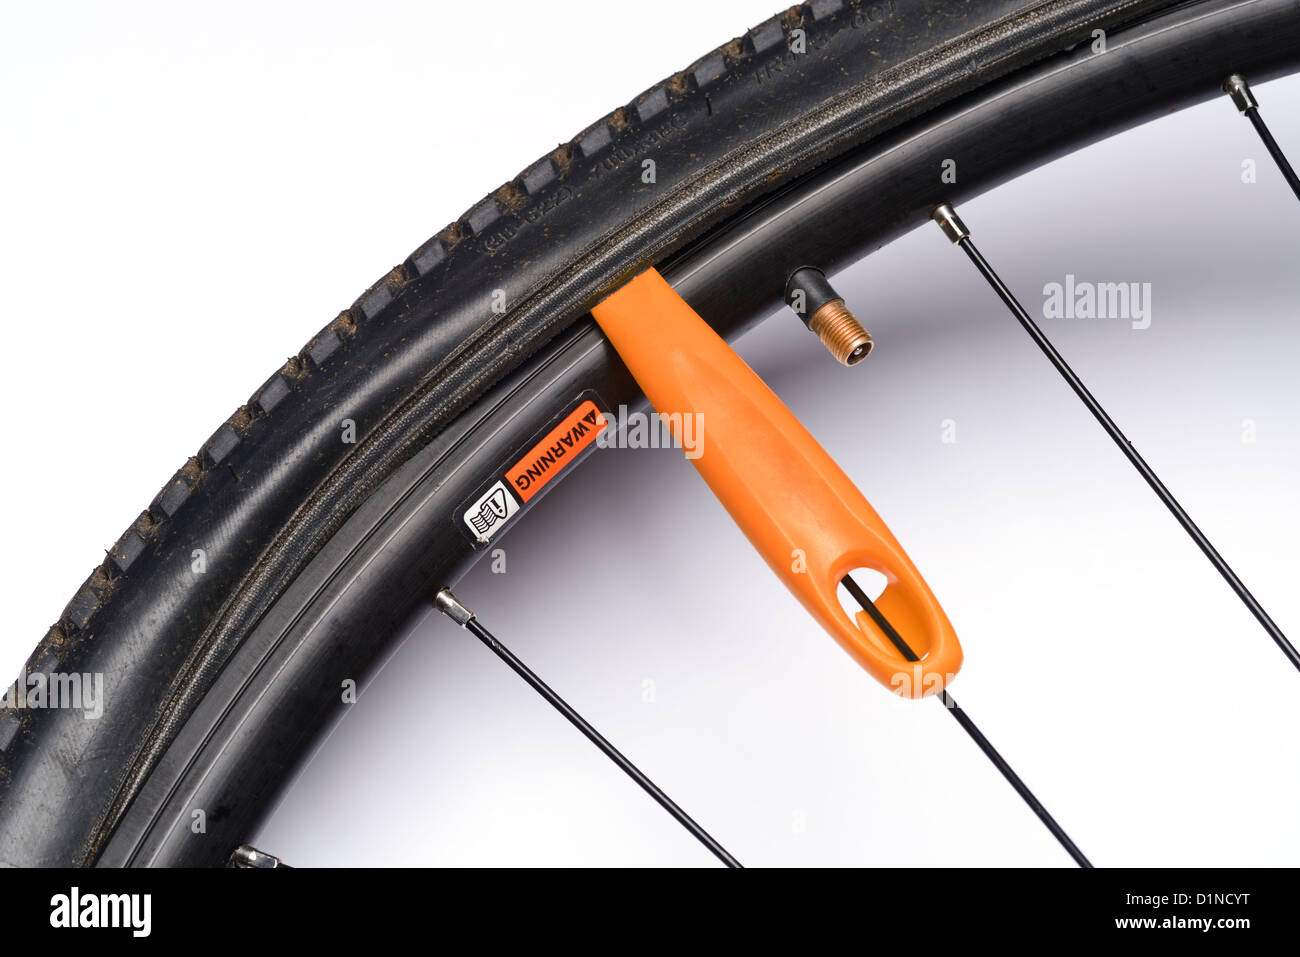 Pneus dépose une roue de bicyclette Banque D'Images